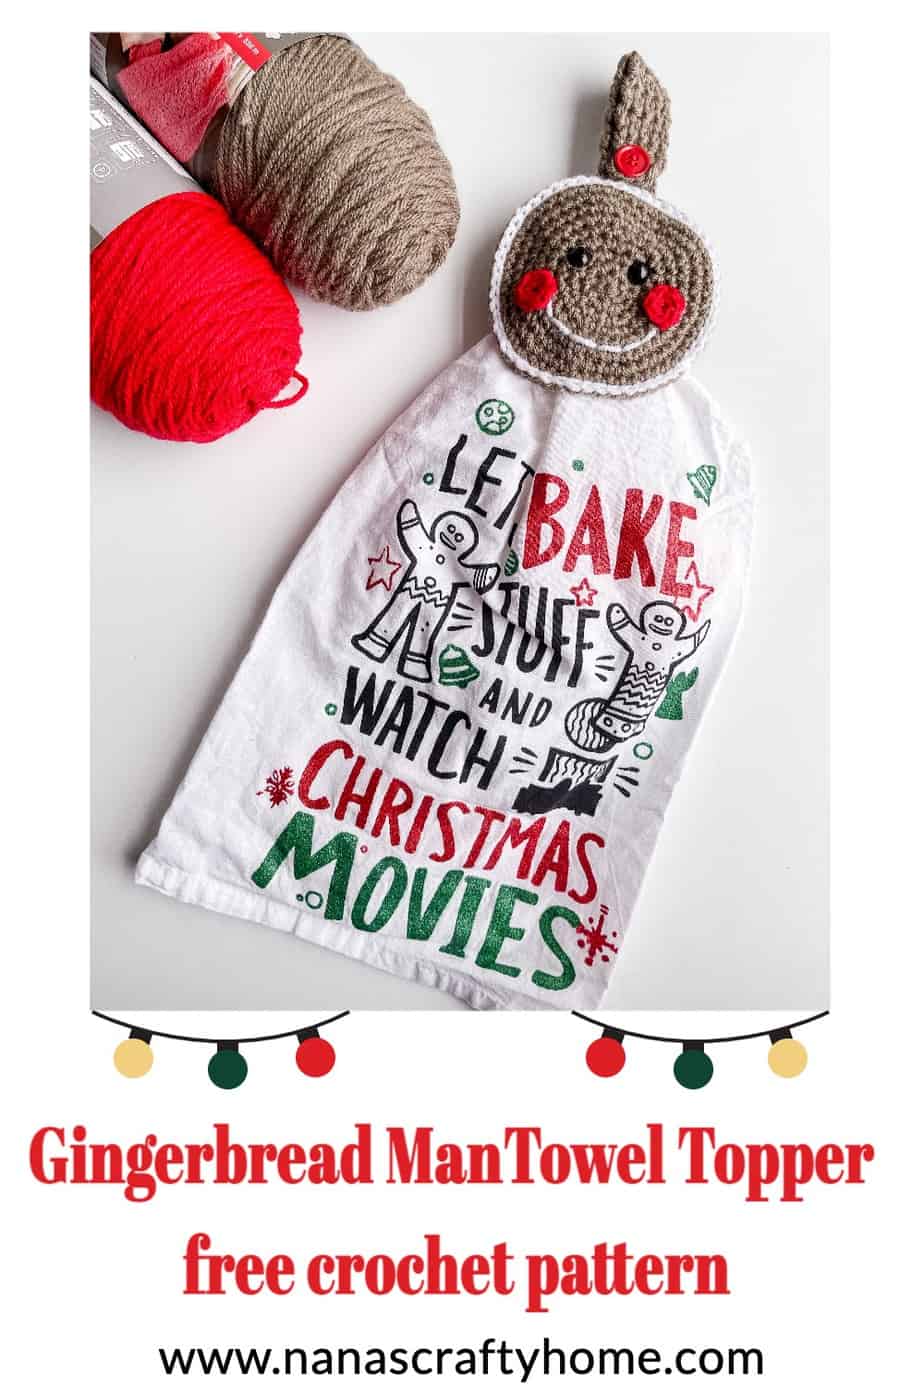 Gingerbread Man Towel Topper free crochet pattern